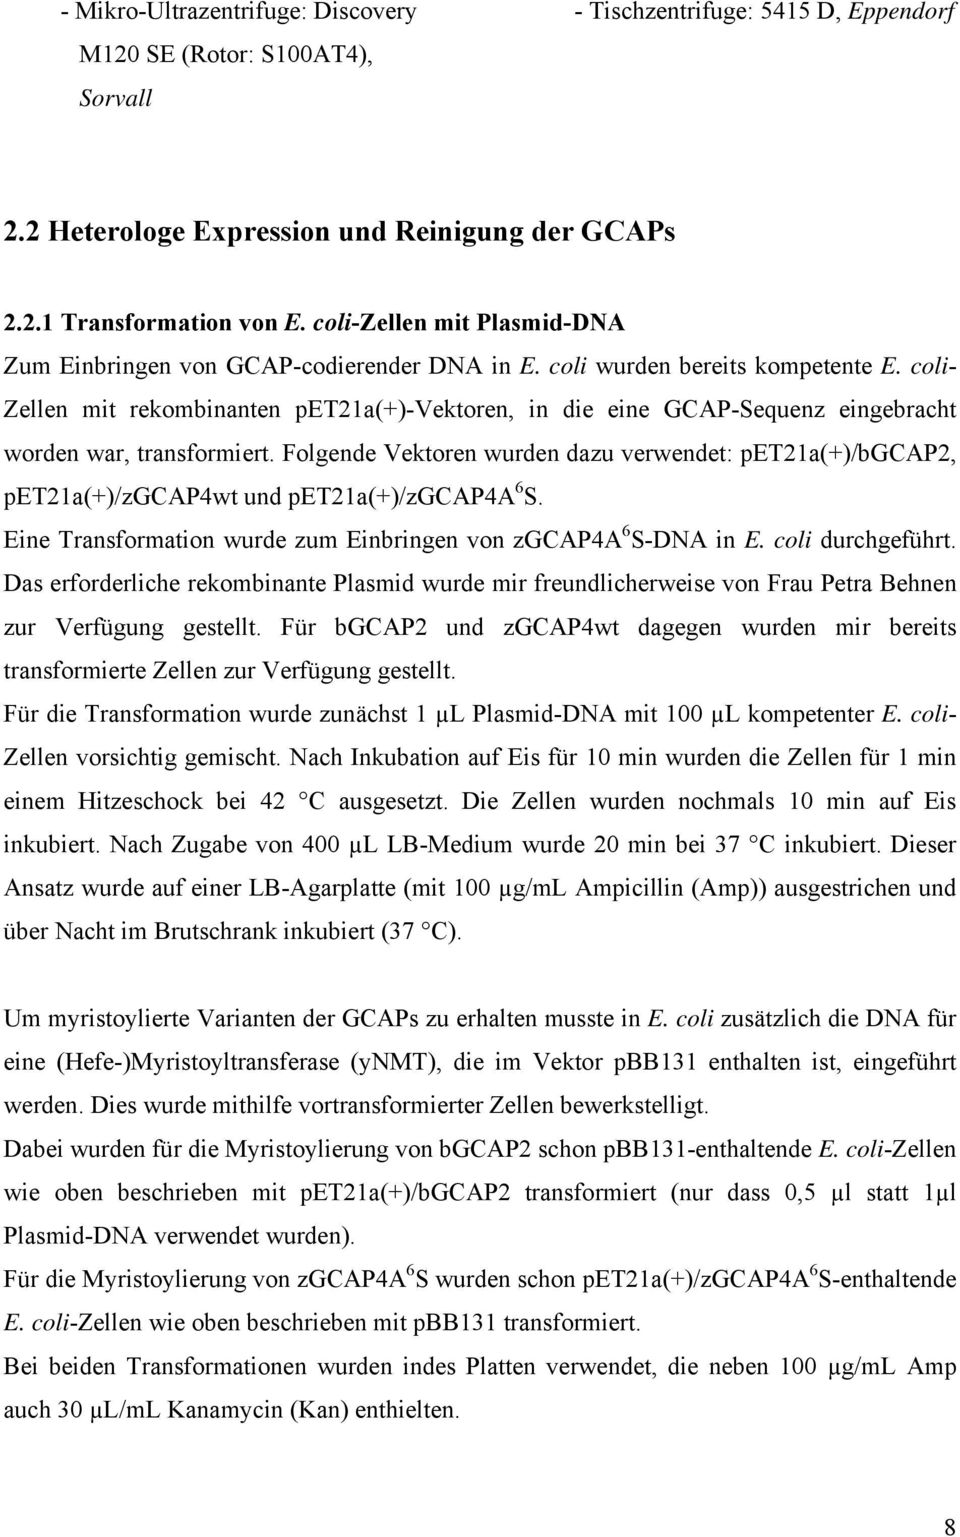 coli- Zellen mit rekombinanten pet21a(+)-vektoren, in die eine GCAP-Sequenz eingebracht worden war, transformiert.